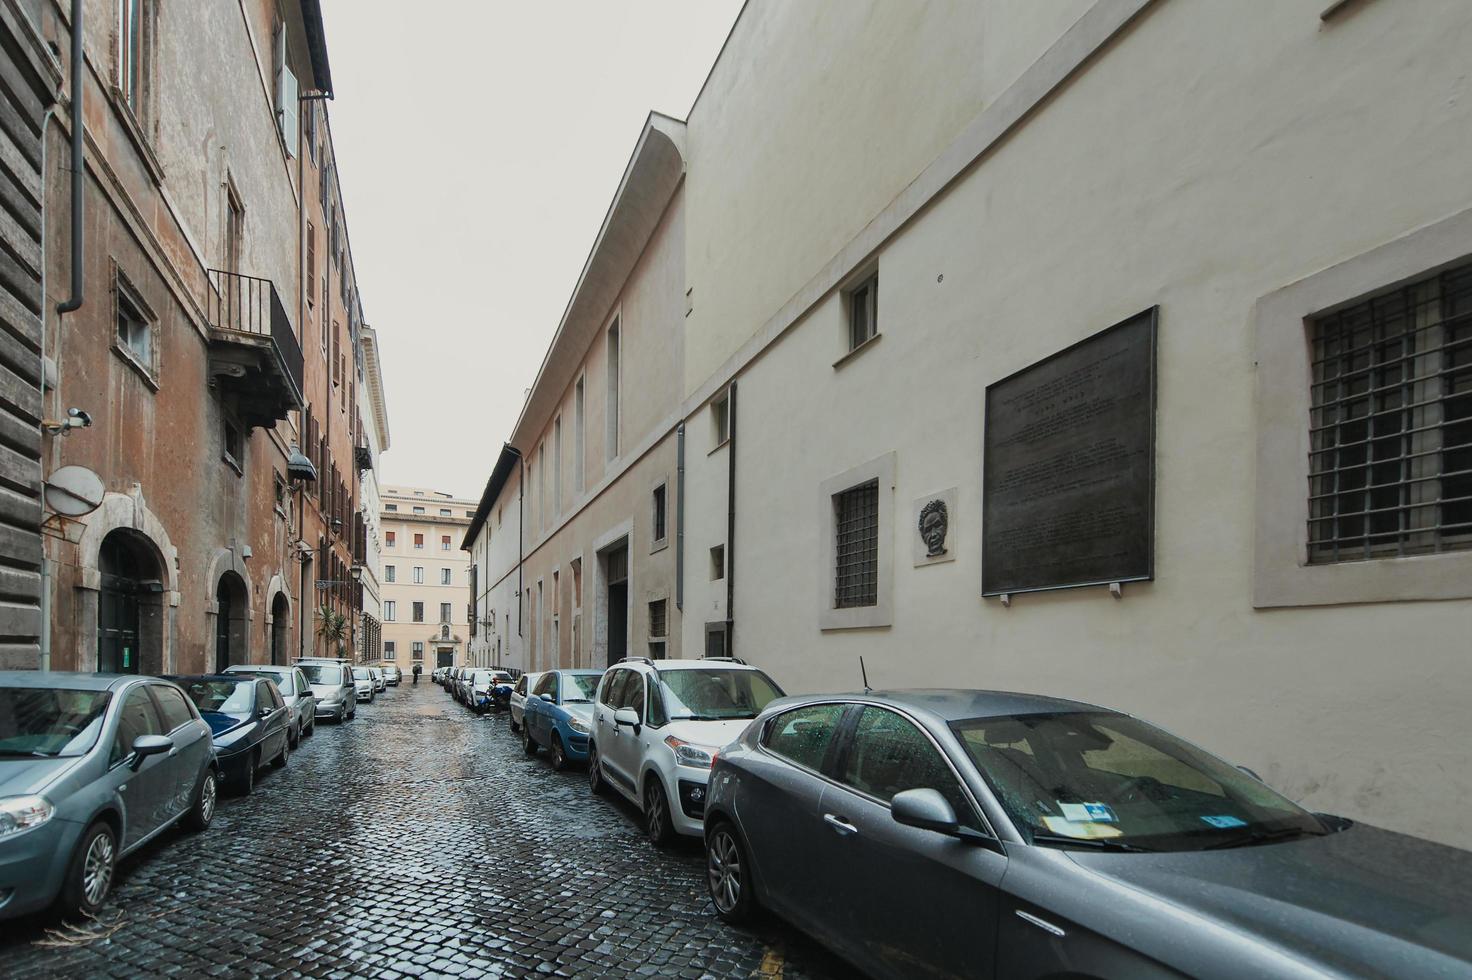 Via Caetani in Rome. Place where the body of statesman Aldo Moro was found photo